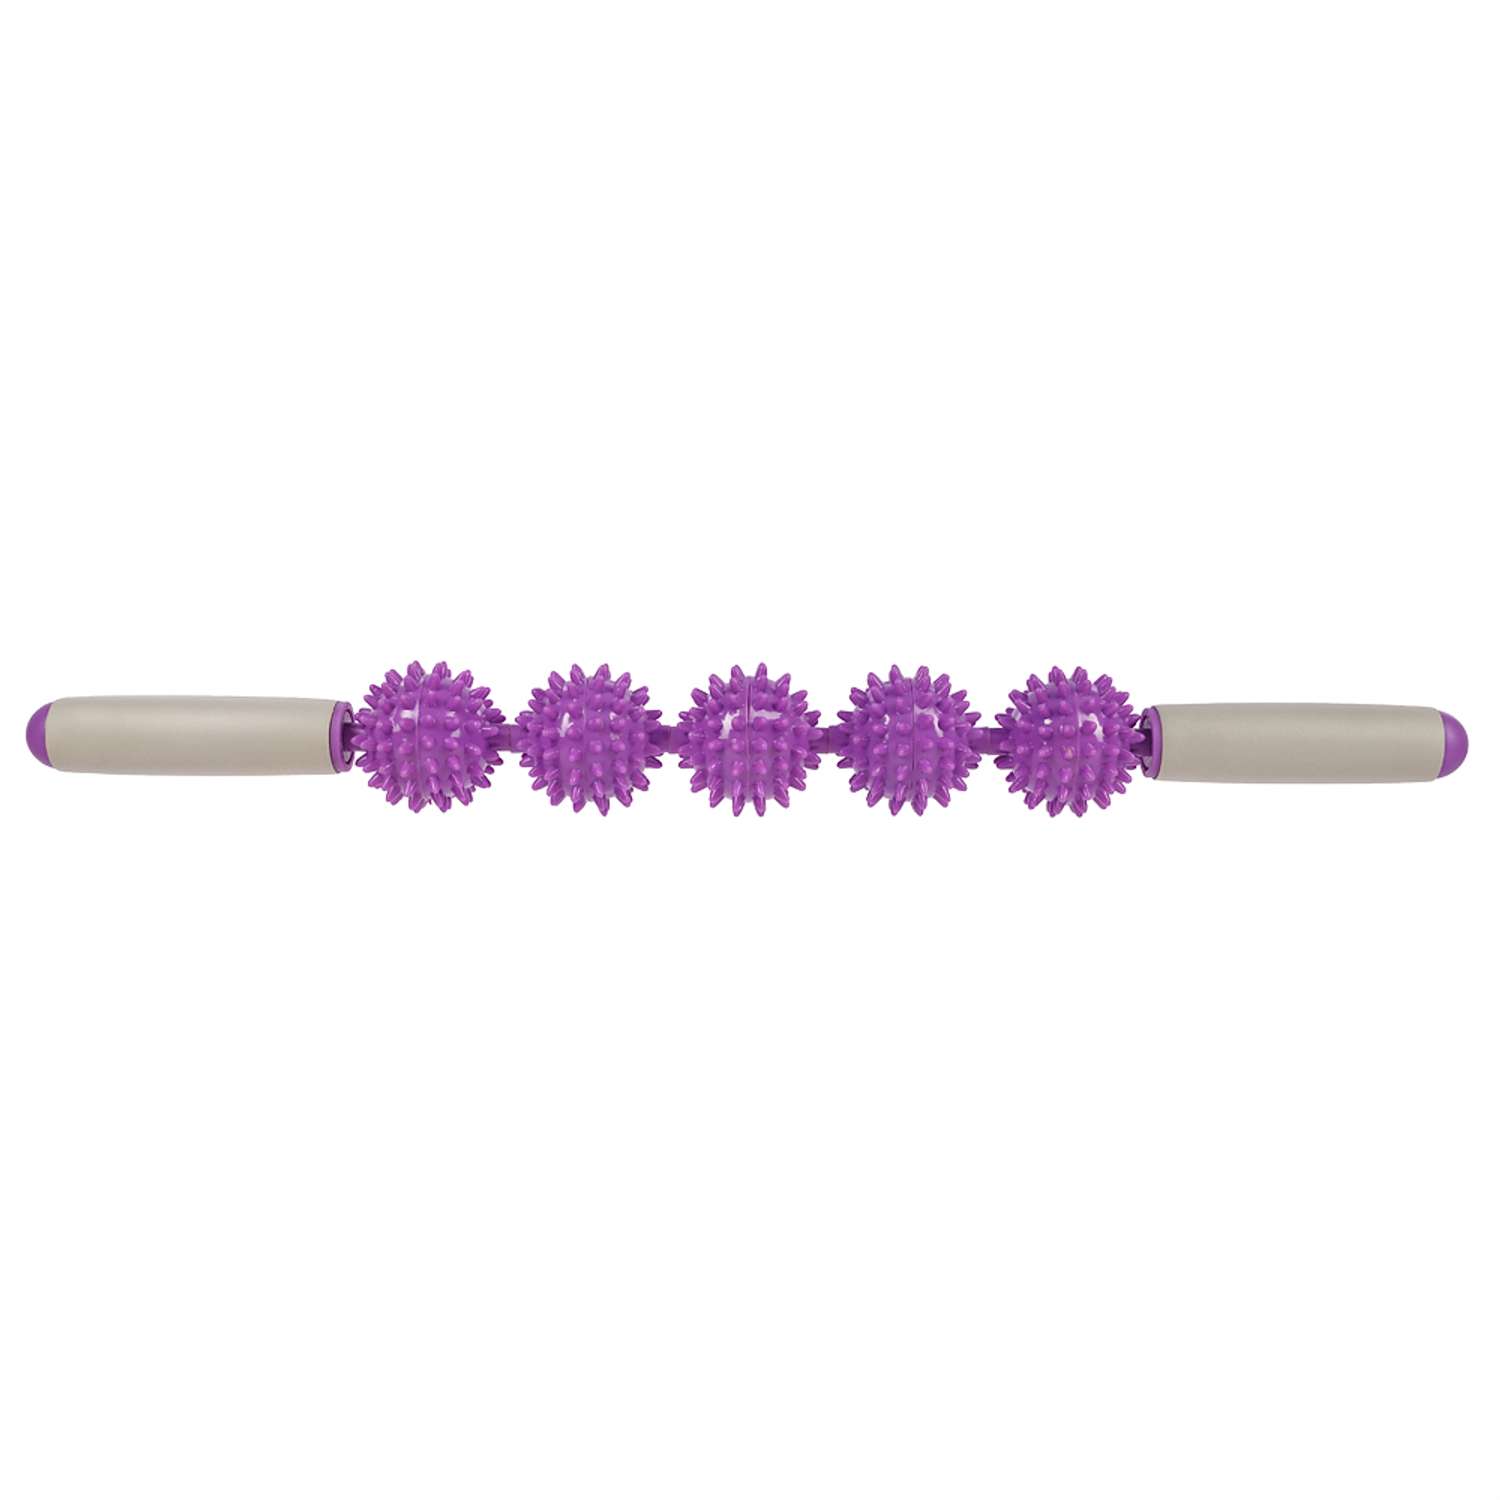 Массажёр ручной механический STRONG BODY МФР 5 массажных мячей на палке фиолетовый - фото 3